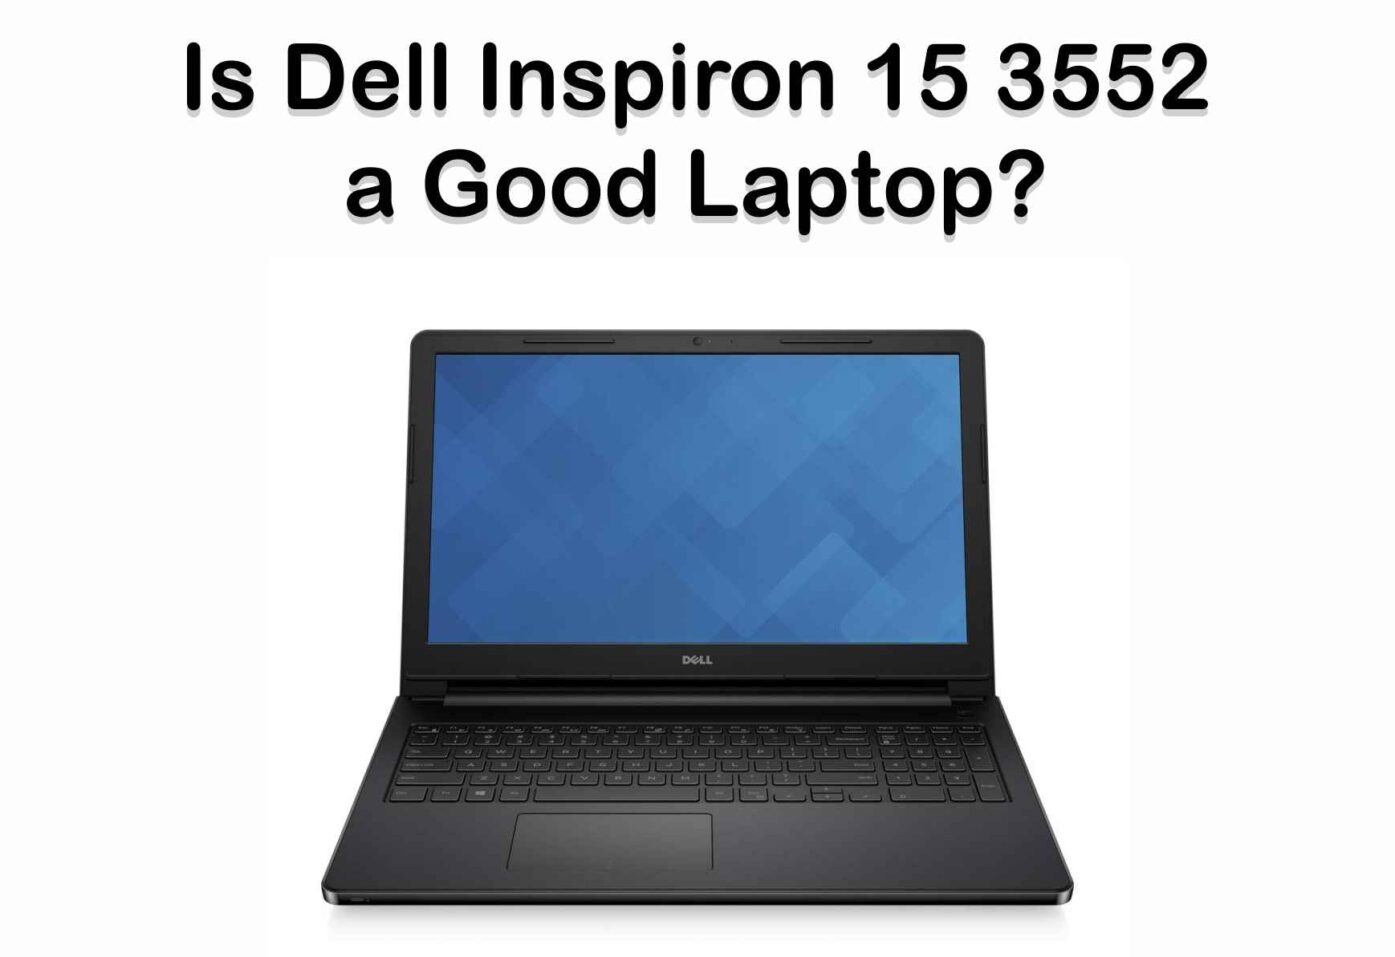 Dell Inspiron 15 3552